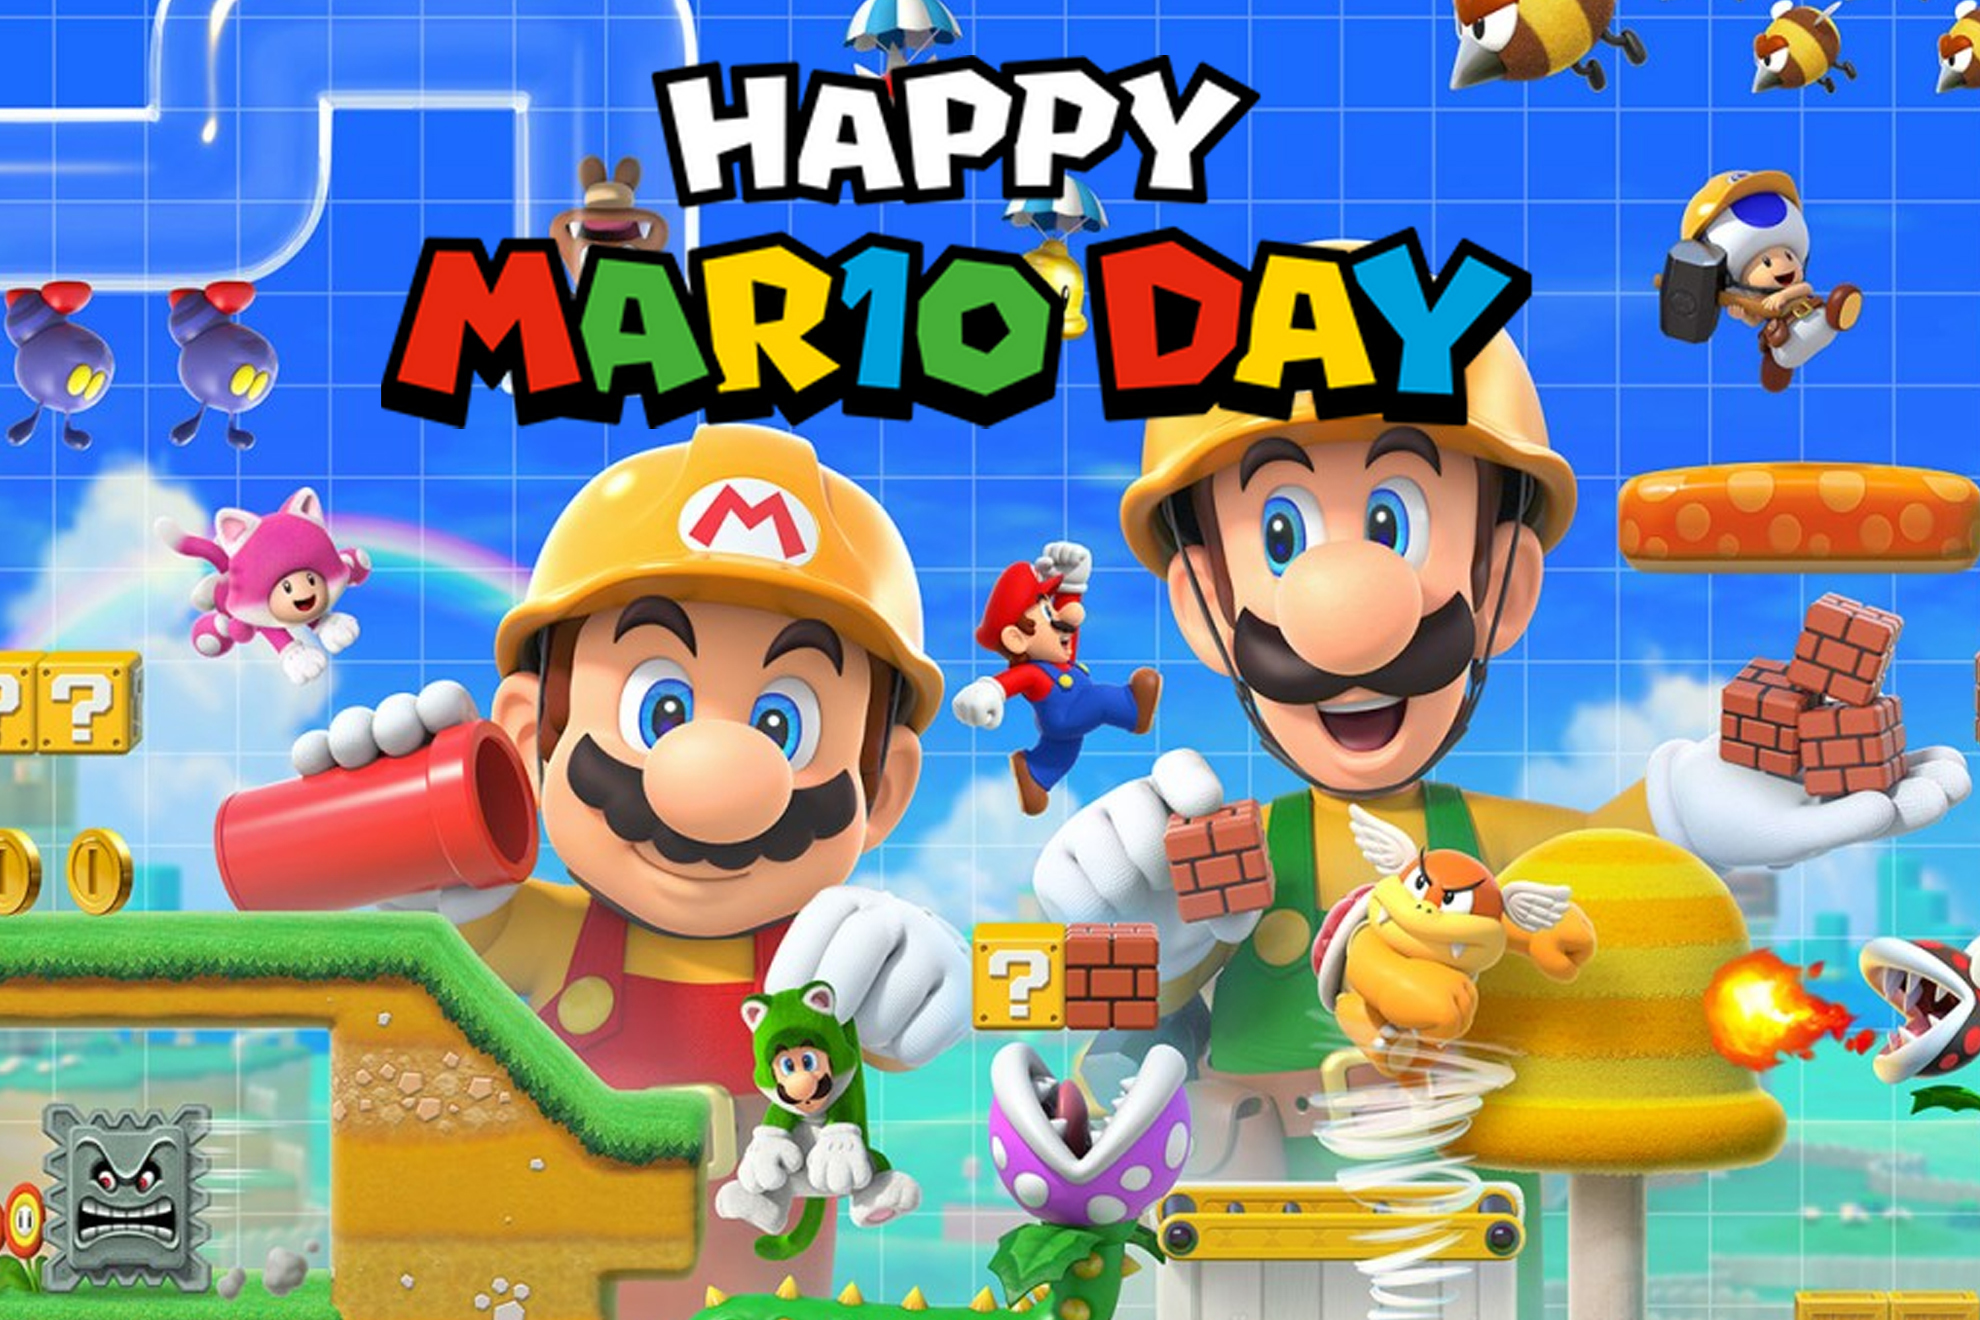 MAR10 DAY, cul es el origen del Da de Mario y por qu se celebra el 10 de marzo?